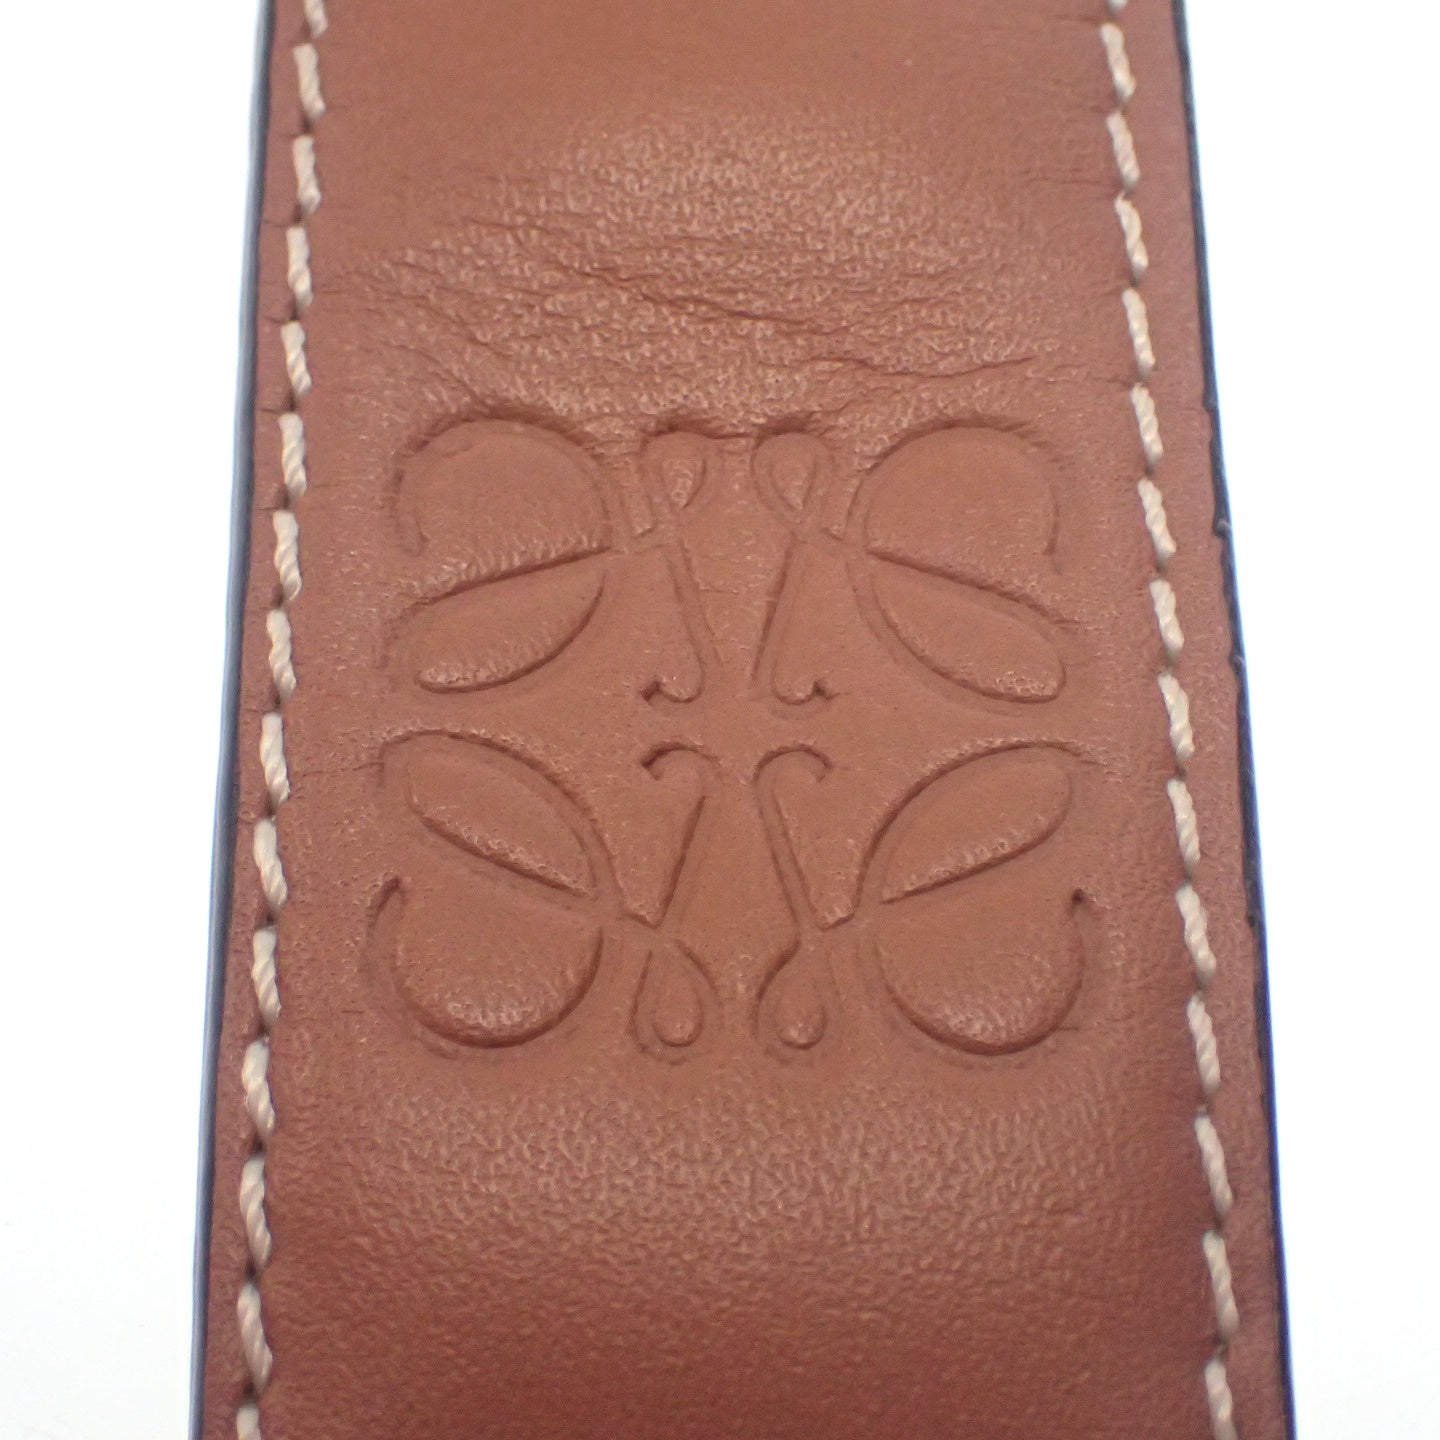 LOEWE Anagram slap bracelet leather brown LOEWE [AFI11] [Used] 